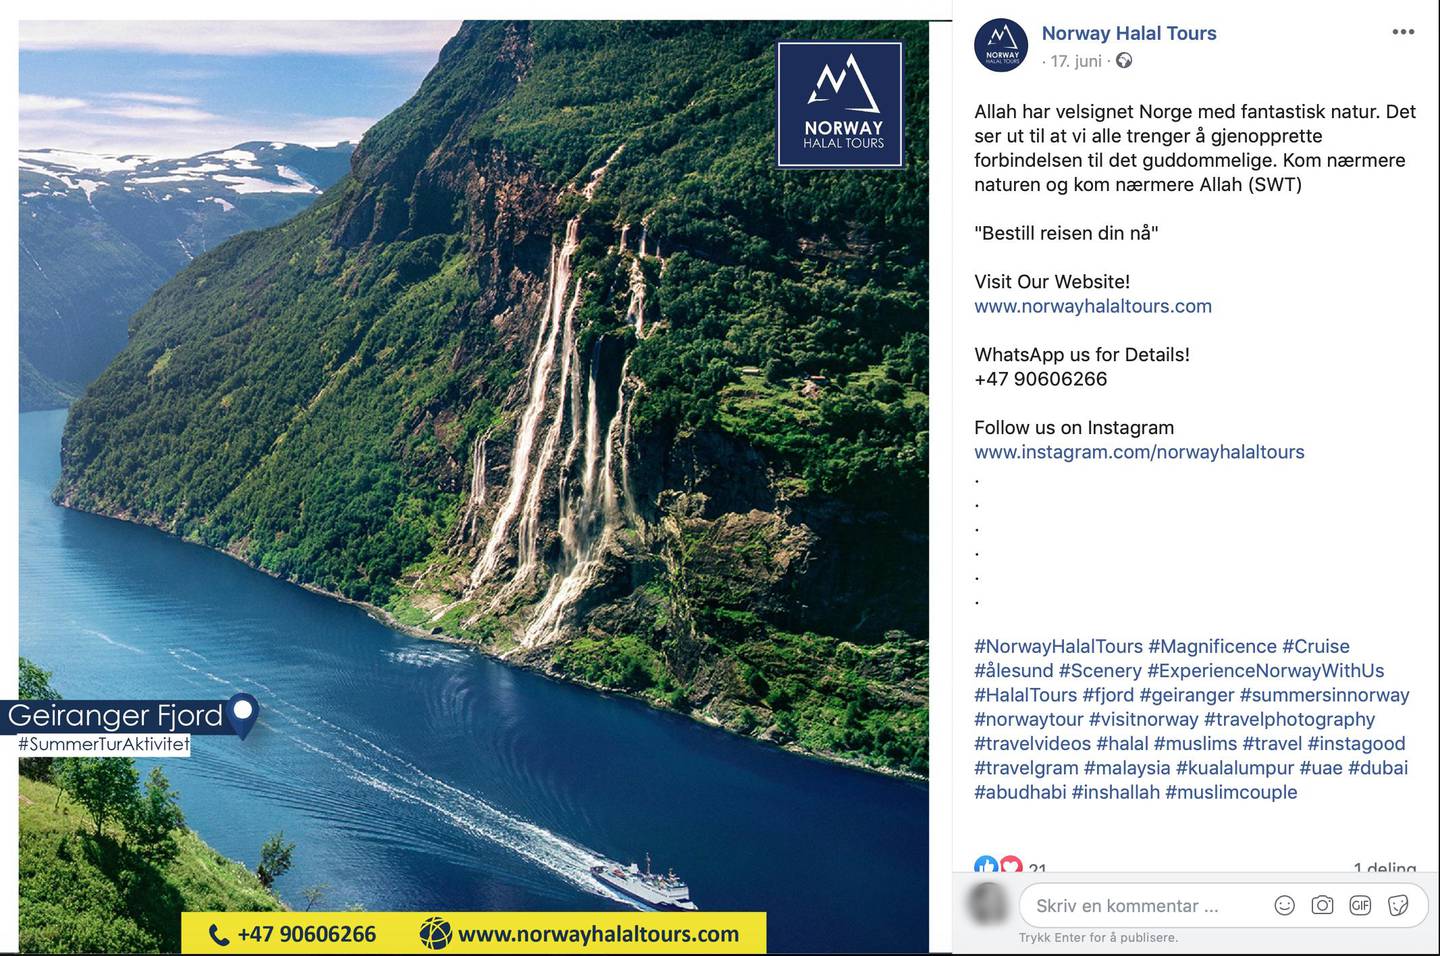 Slik reklamerer Norway Halal Tours for sine pakketurer i Norge på Facebook.